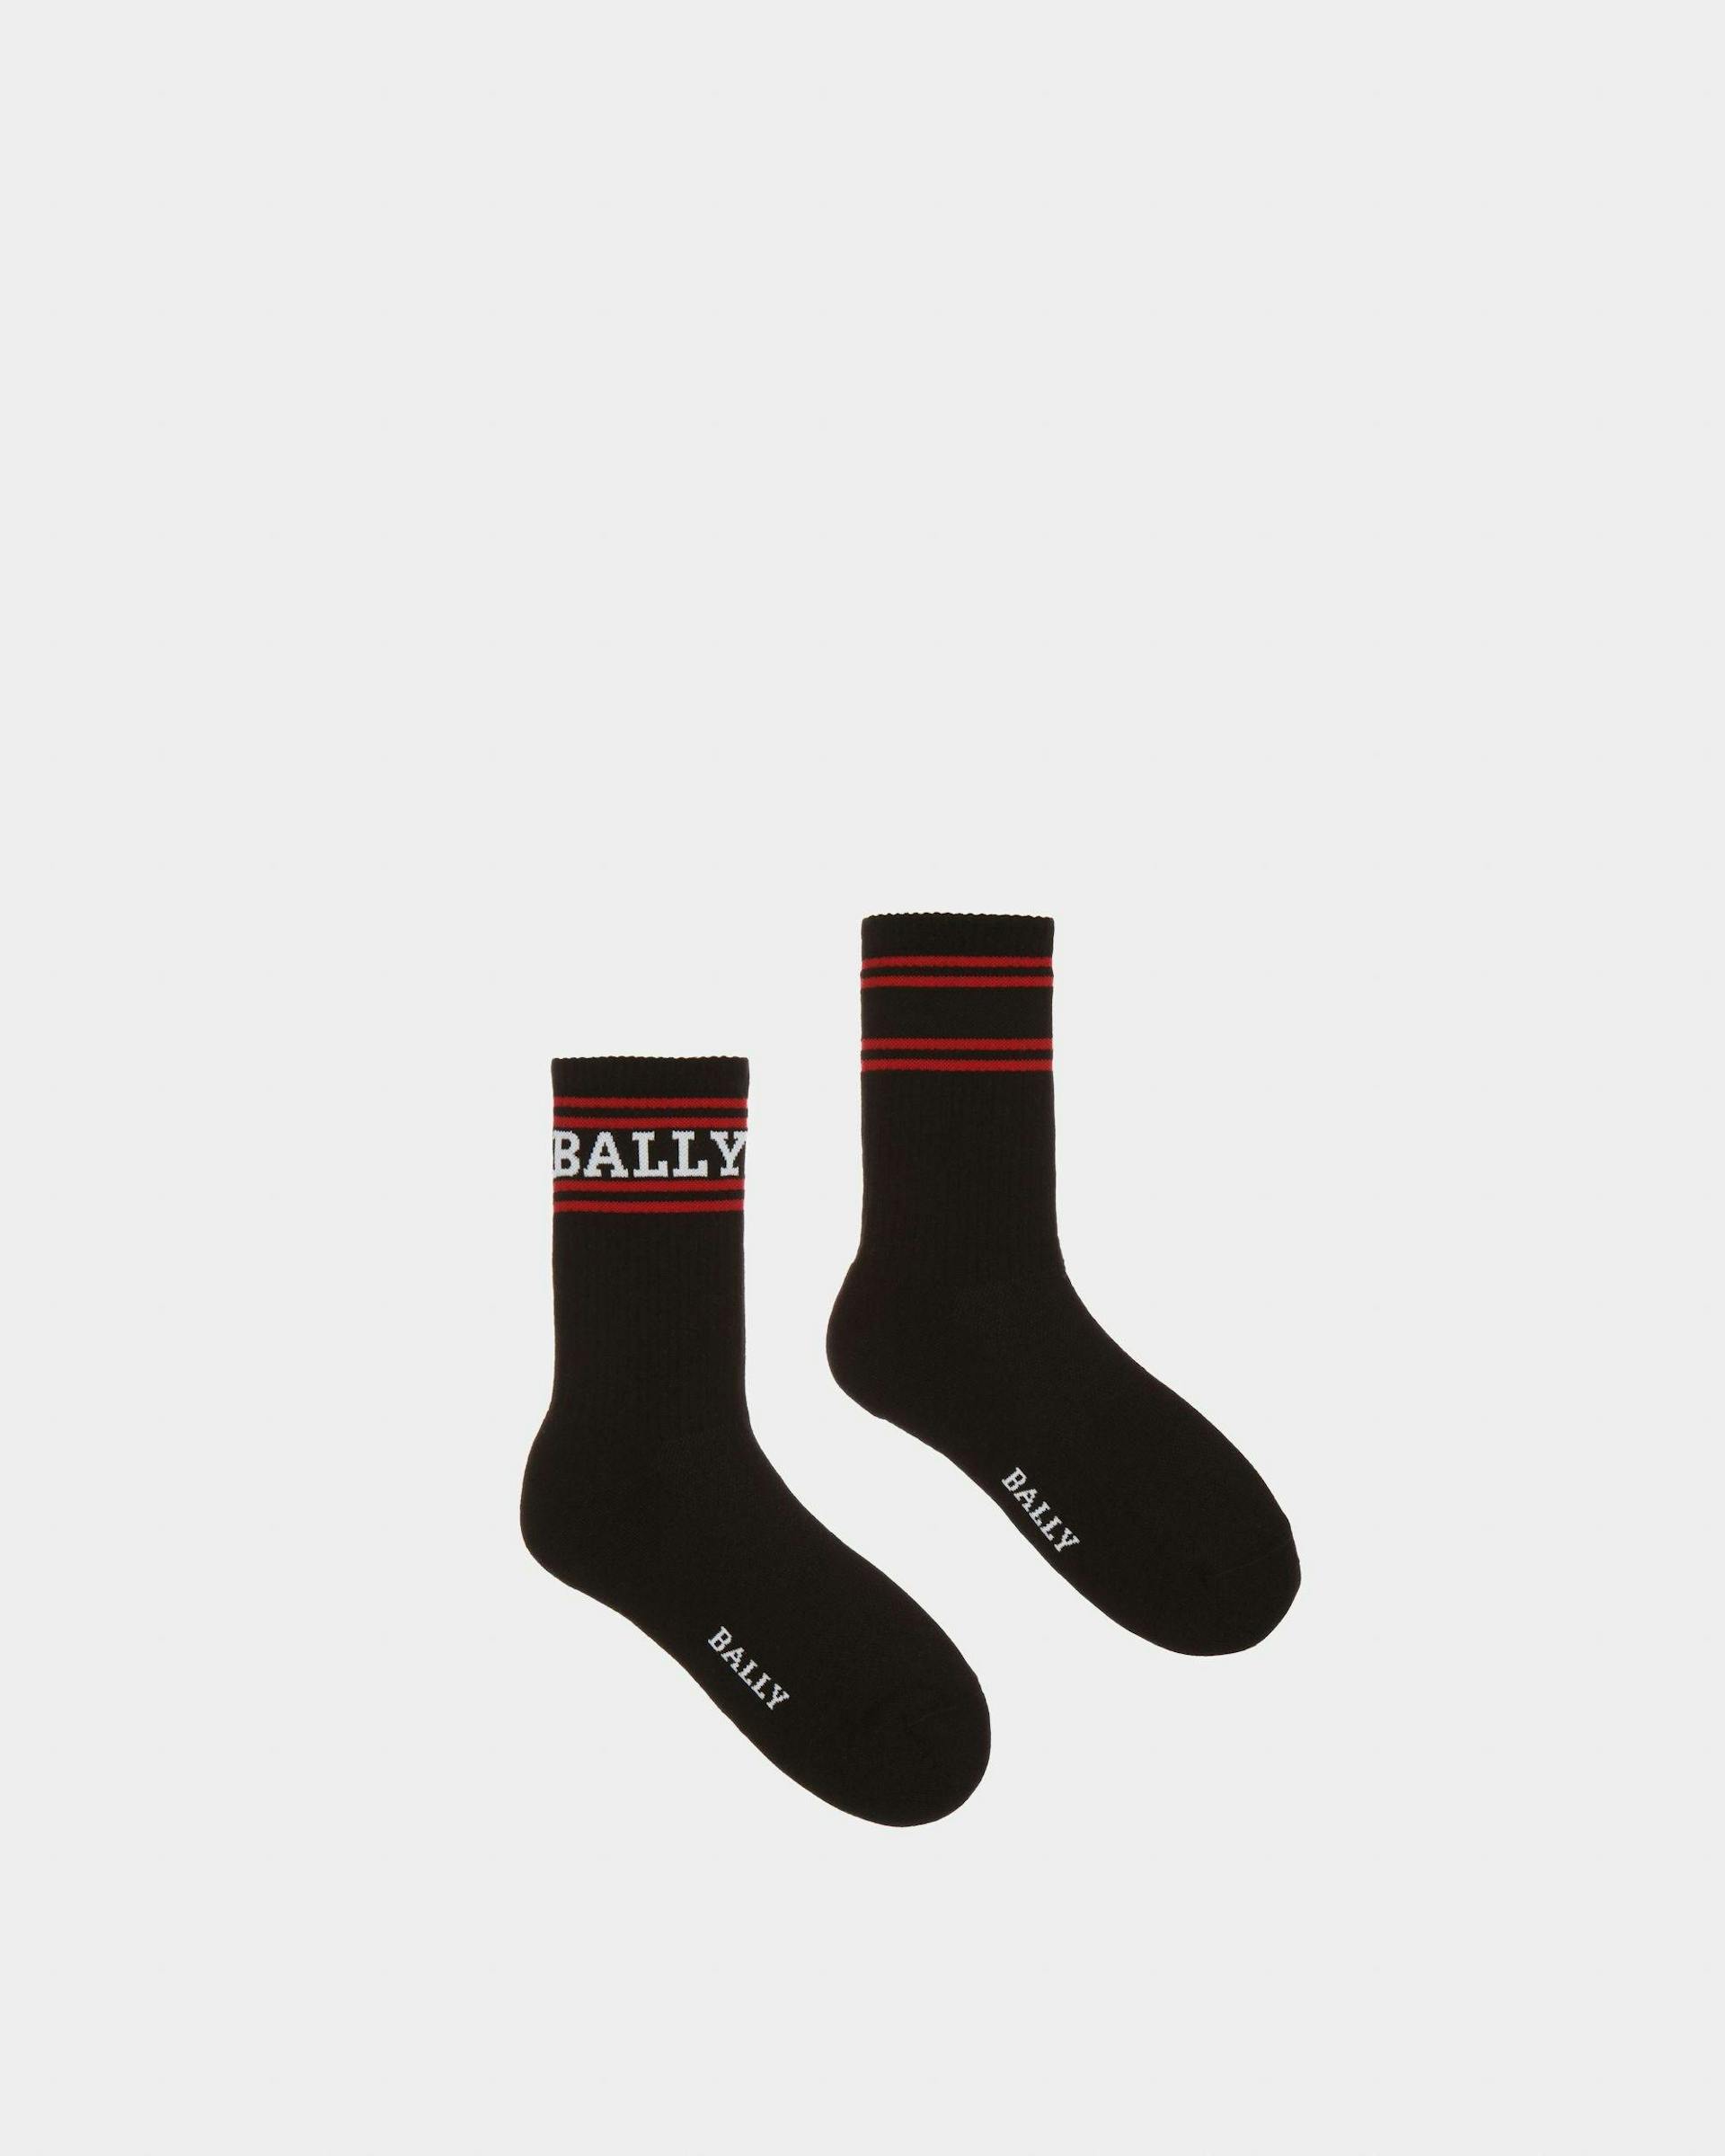 Cotton Socks In Black - Men's - Bally - 01